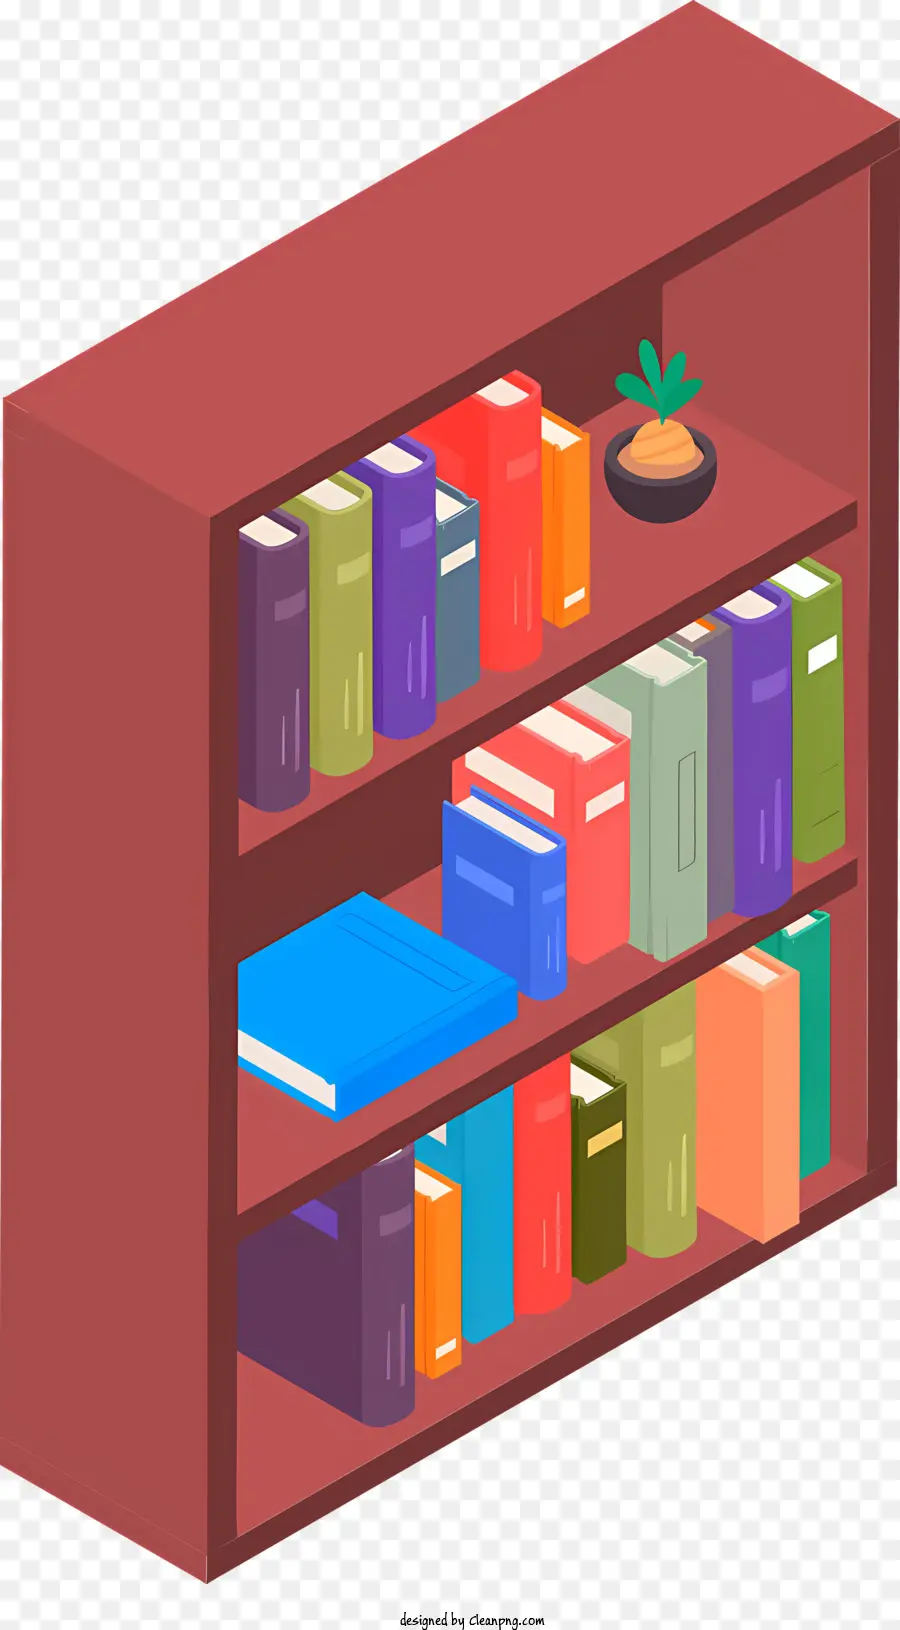 ICON BOOKSHELFBUCHBUCHBISBOBUSBUSSCHUSSTORE - Bücherregal mit farbenfrohen Büchern im überfüllten Raum